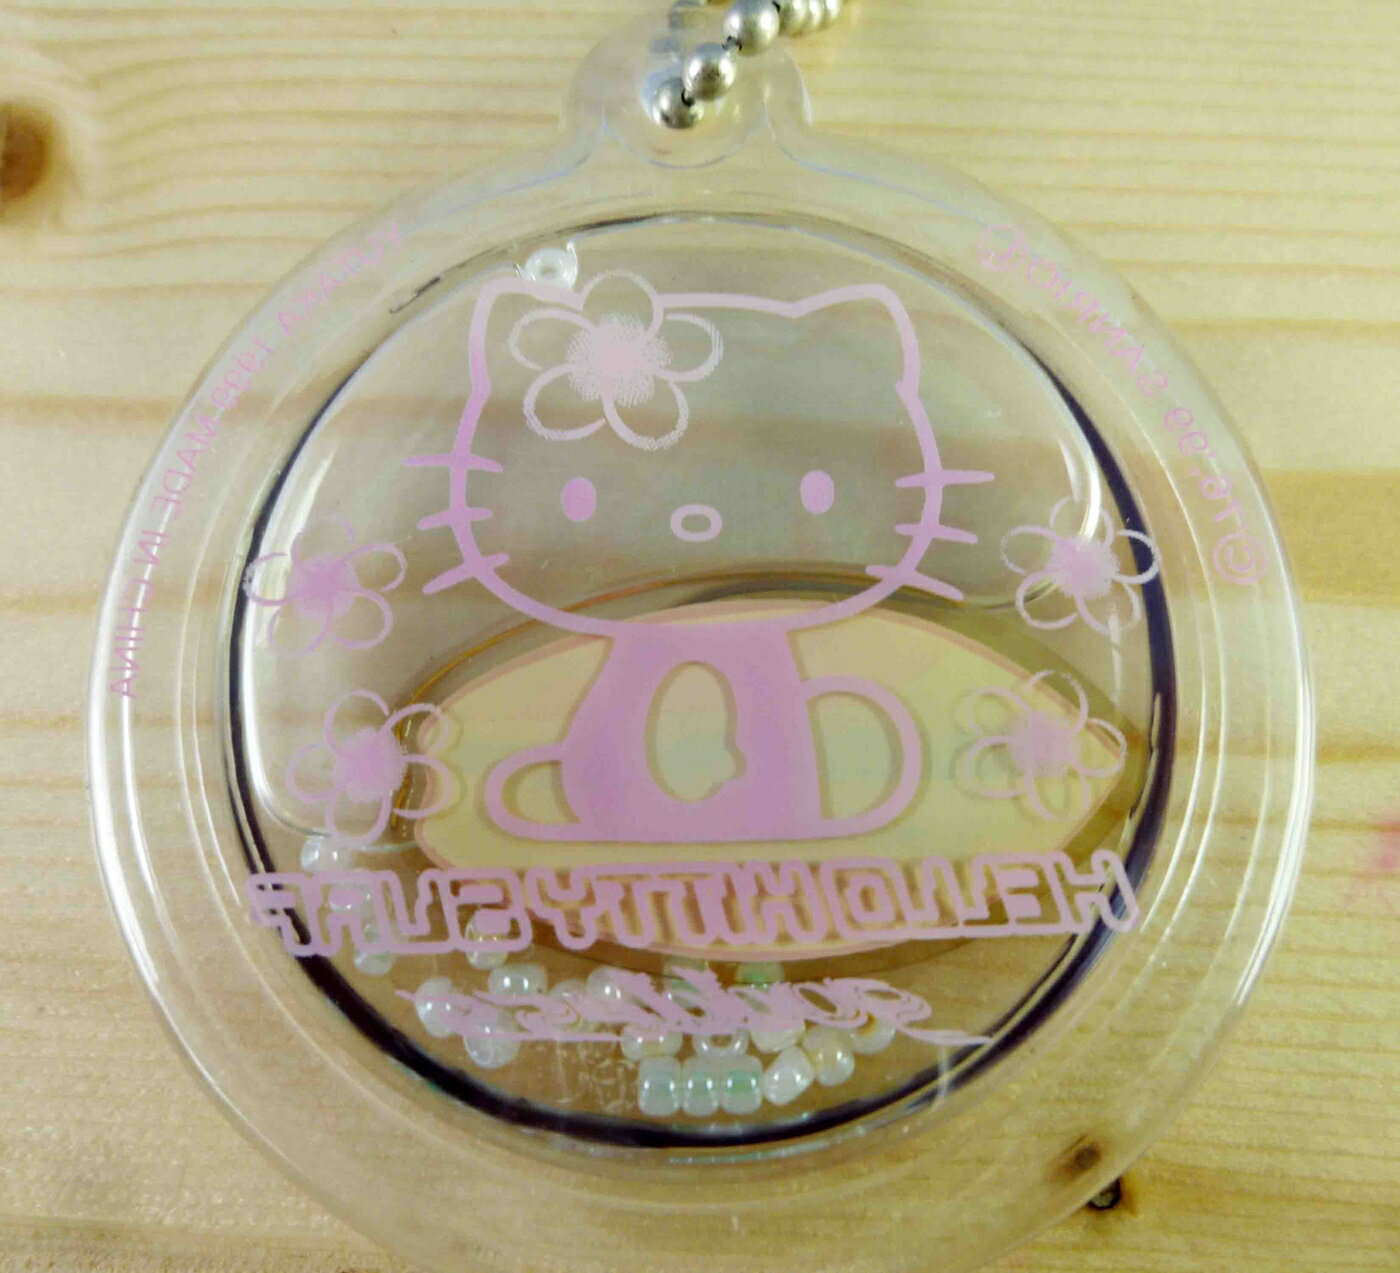 【震撼精品百貨】Hello Kitty 凱蒂貓 KITTY鑰匙圈-衝浪 震撼日式精品百貨